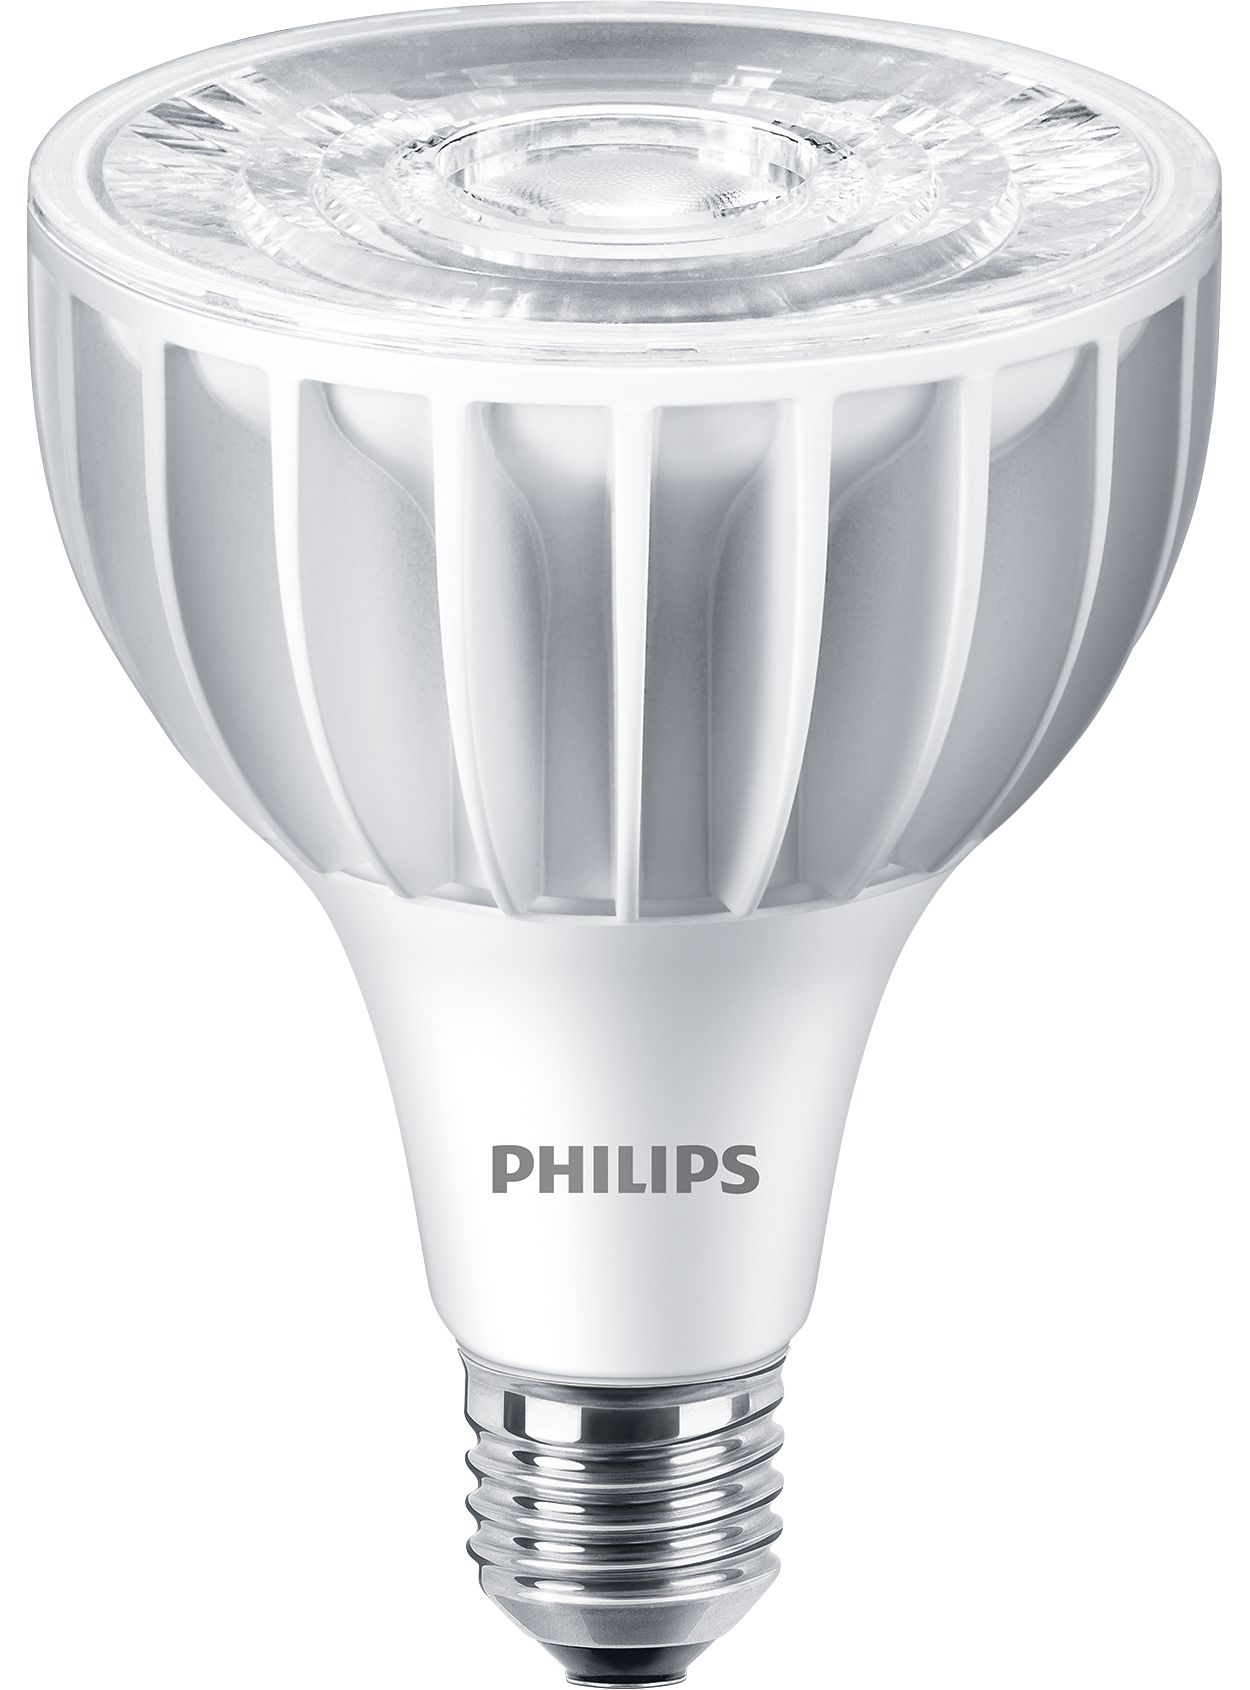 Corepro Ledbulbs Led Bulbs Philips